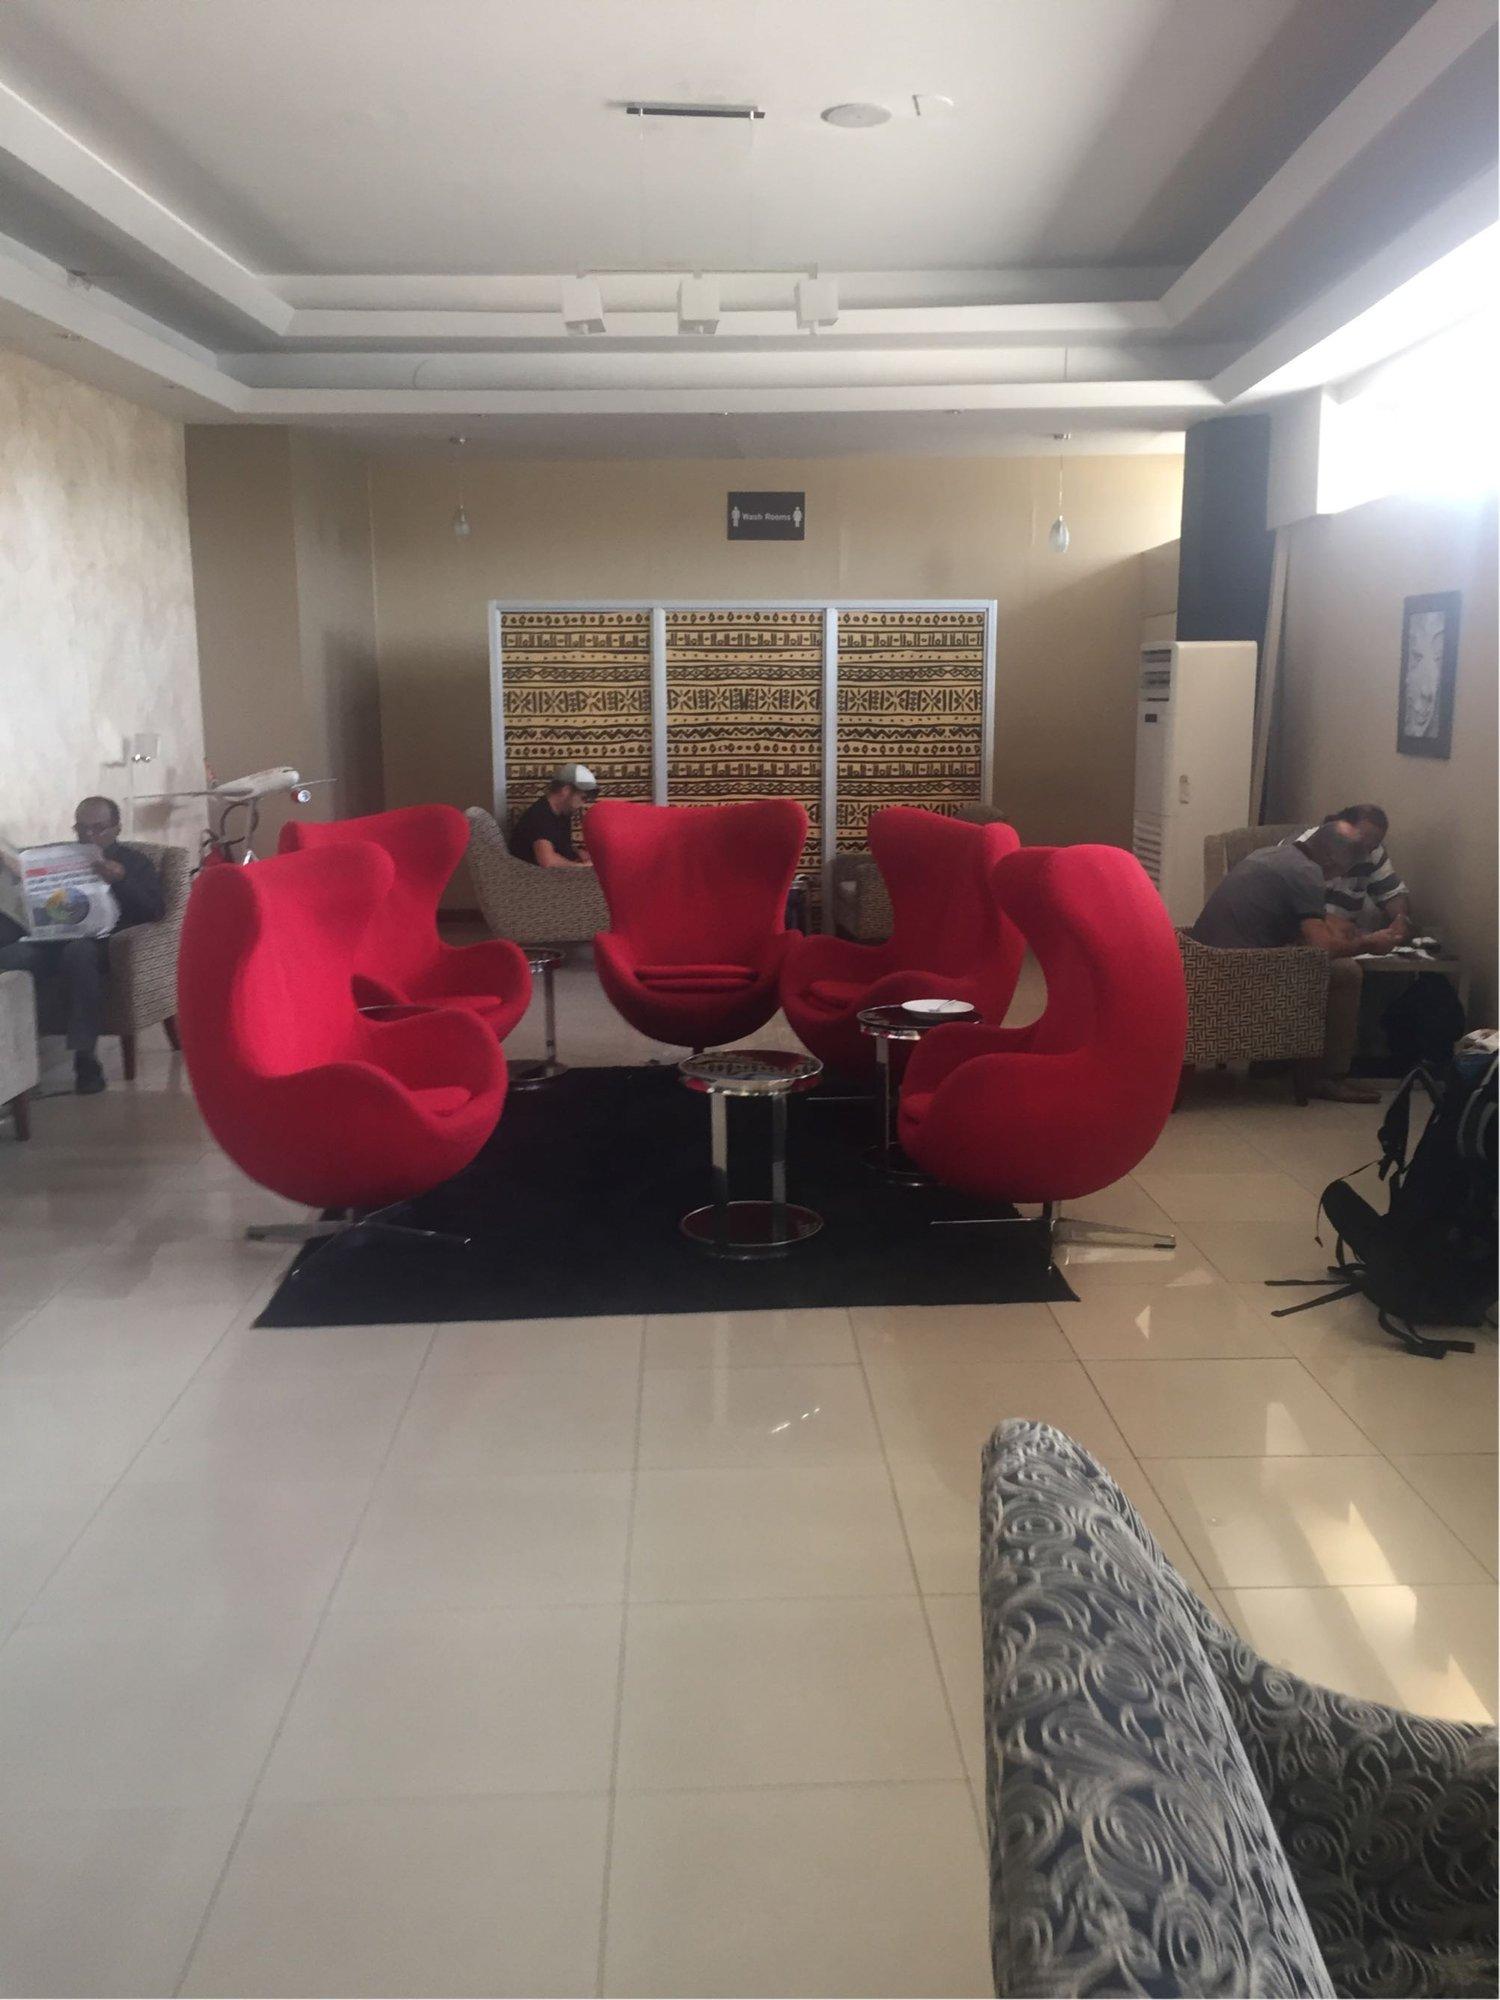 Kenya Airways Simba Lounge image 1 of 1